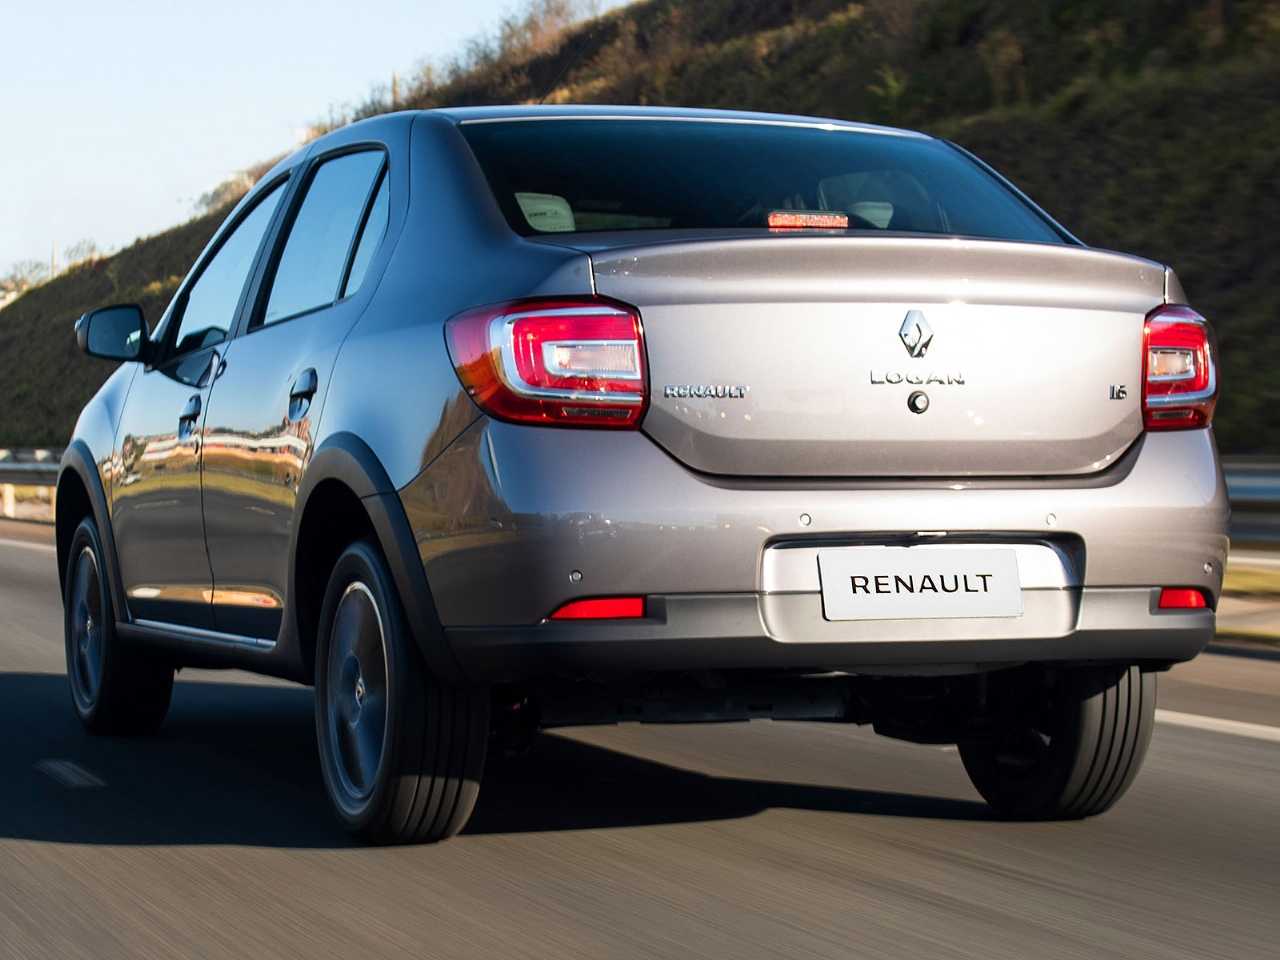 Renault Logan 2020